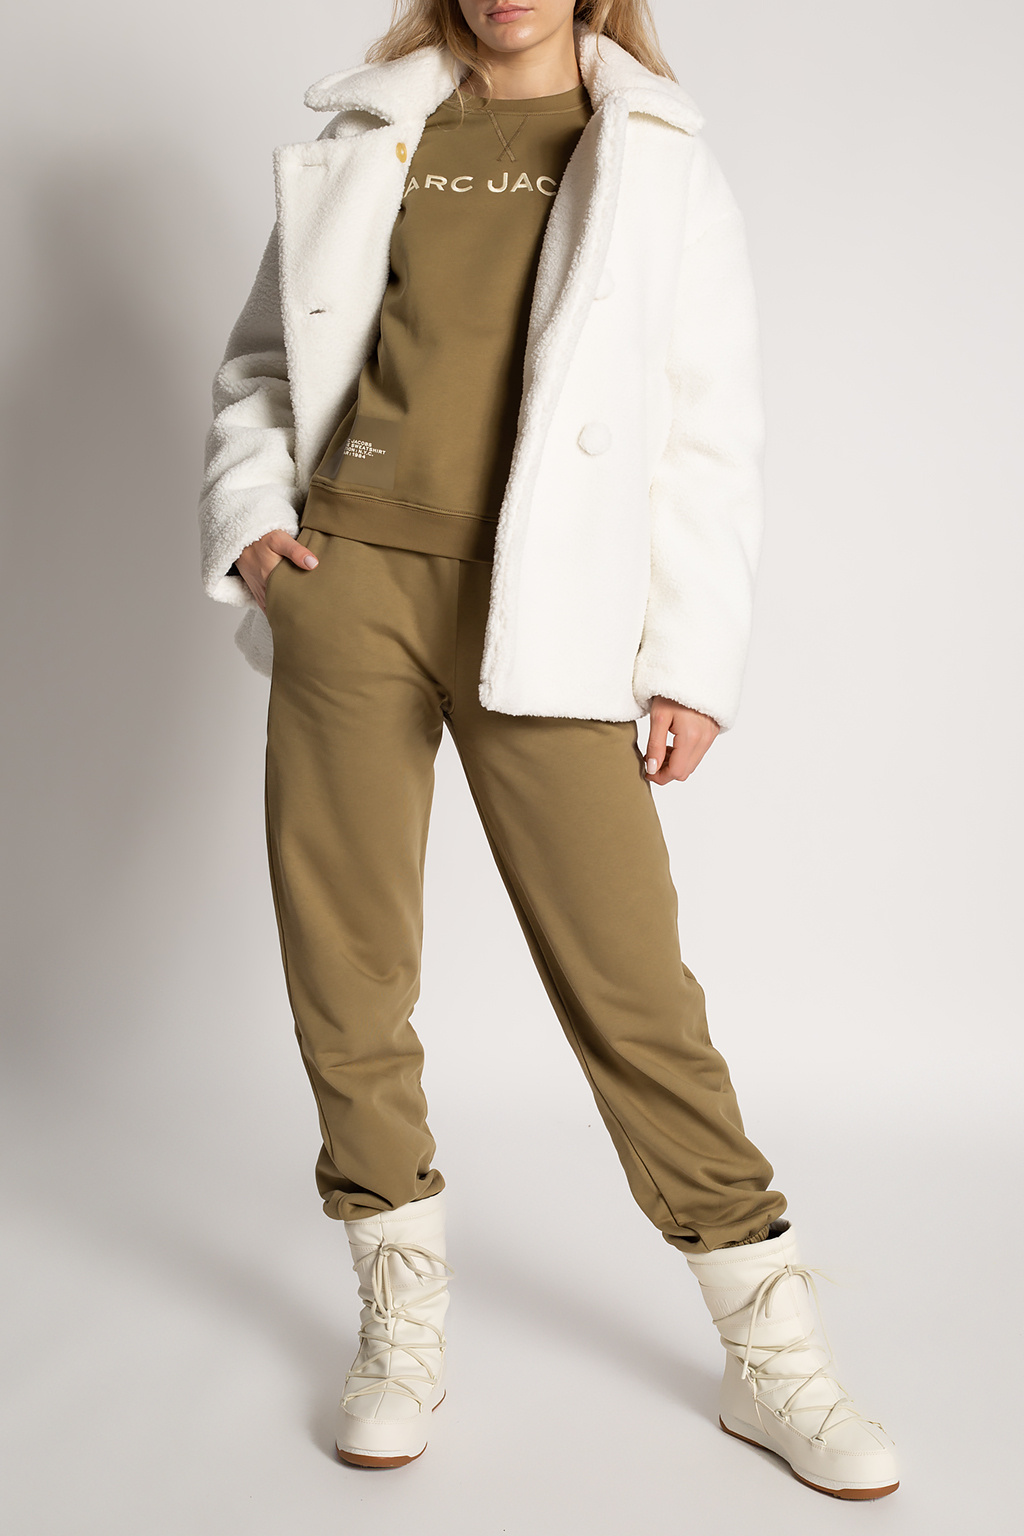 PROENZA SCHOULER BUTY ZA KOSTKĘ TYPU CHELSEA Fur coat